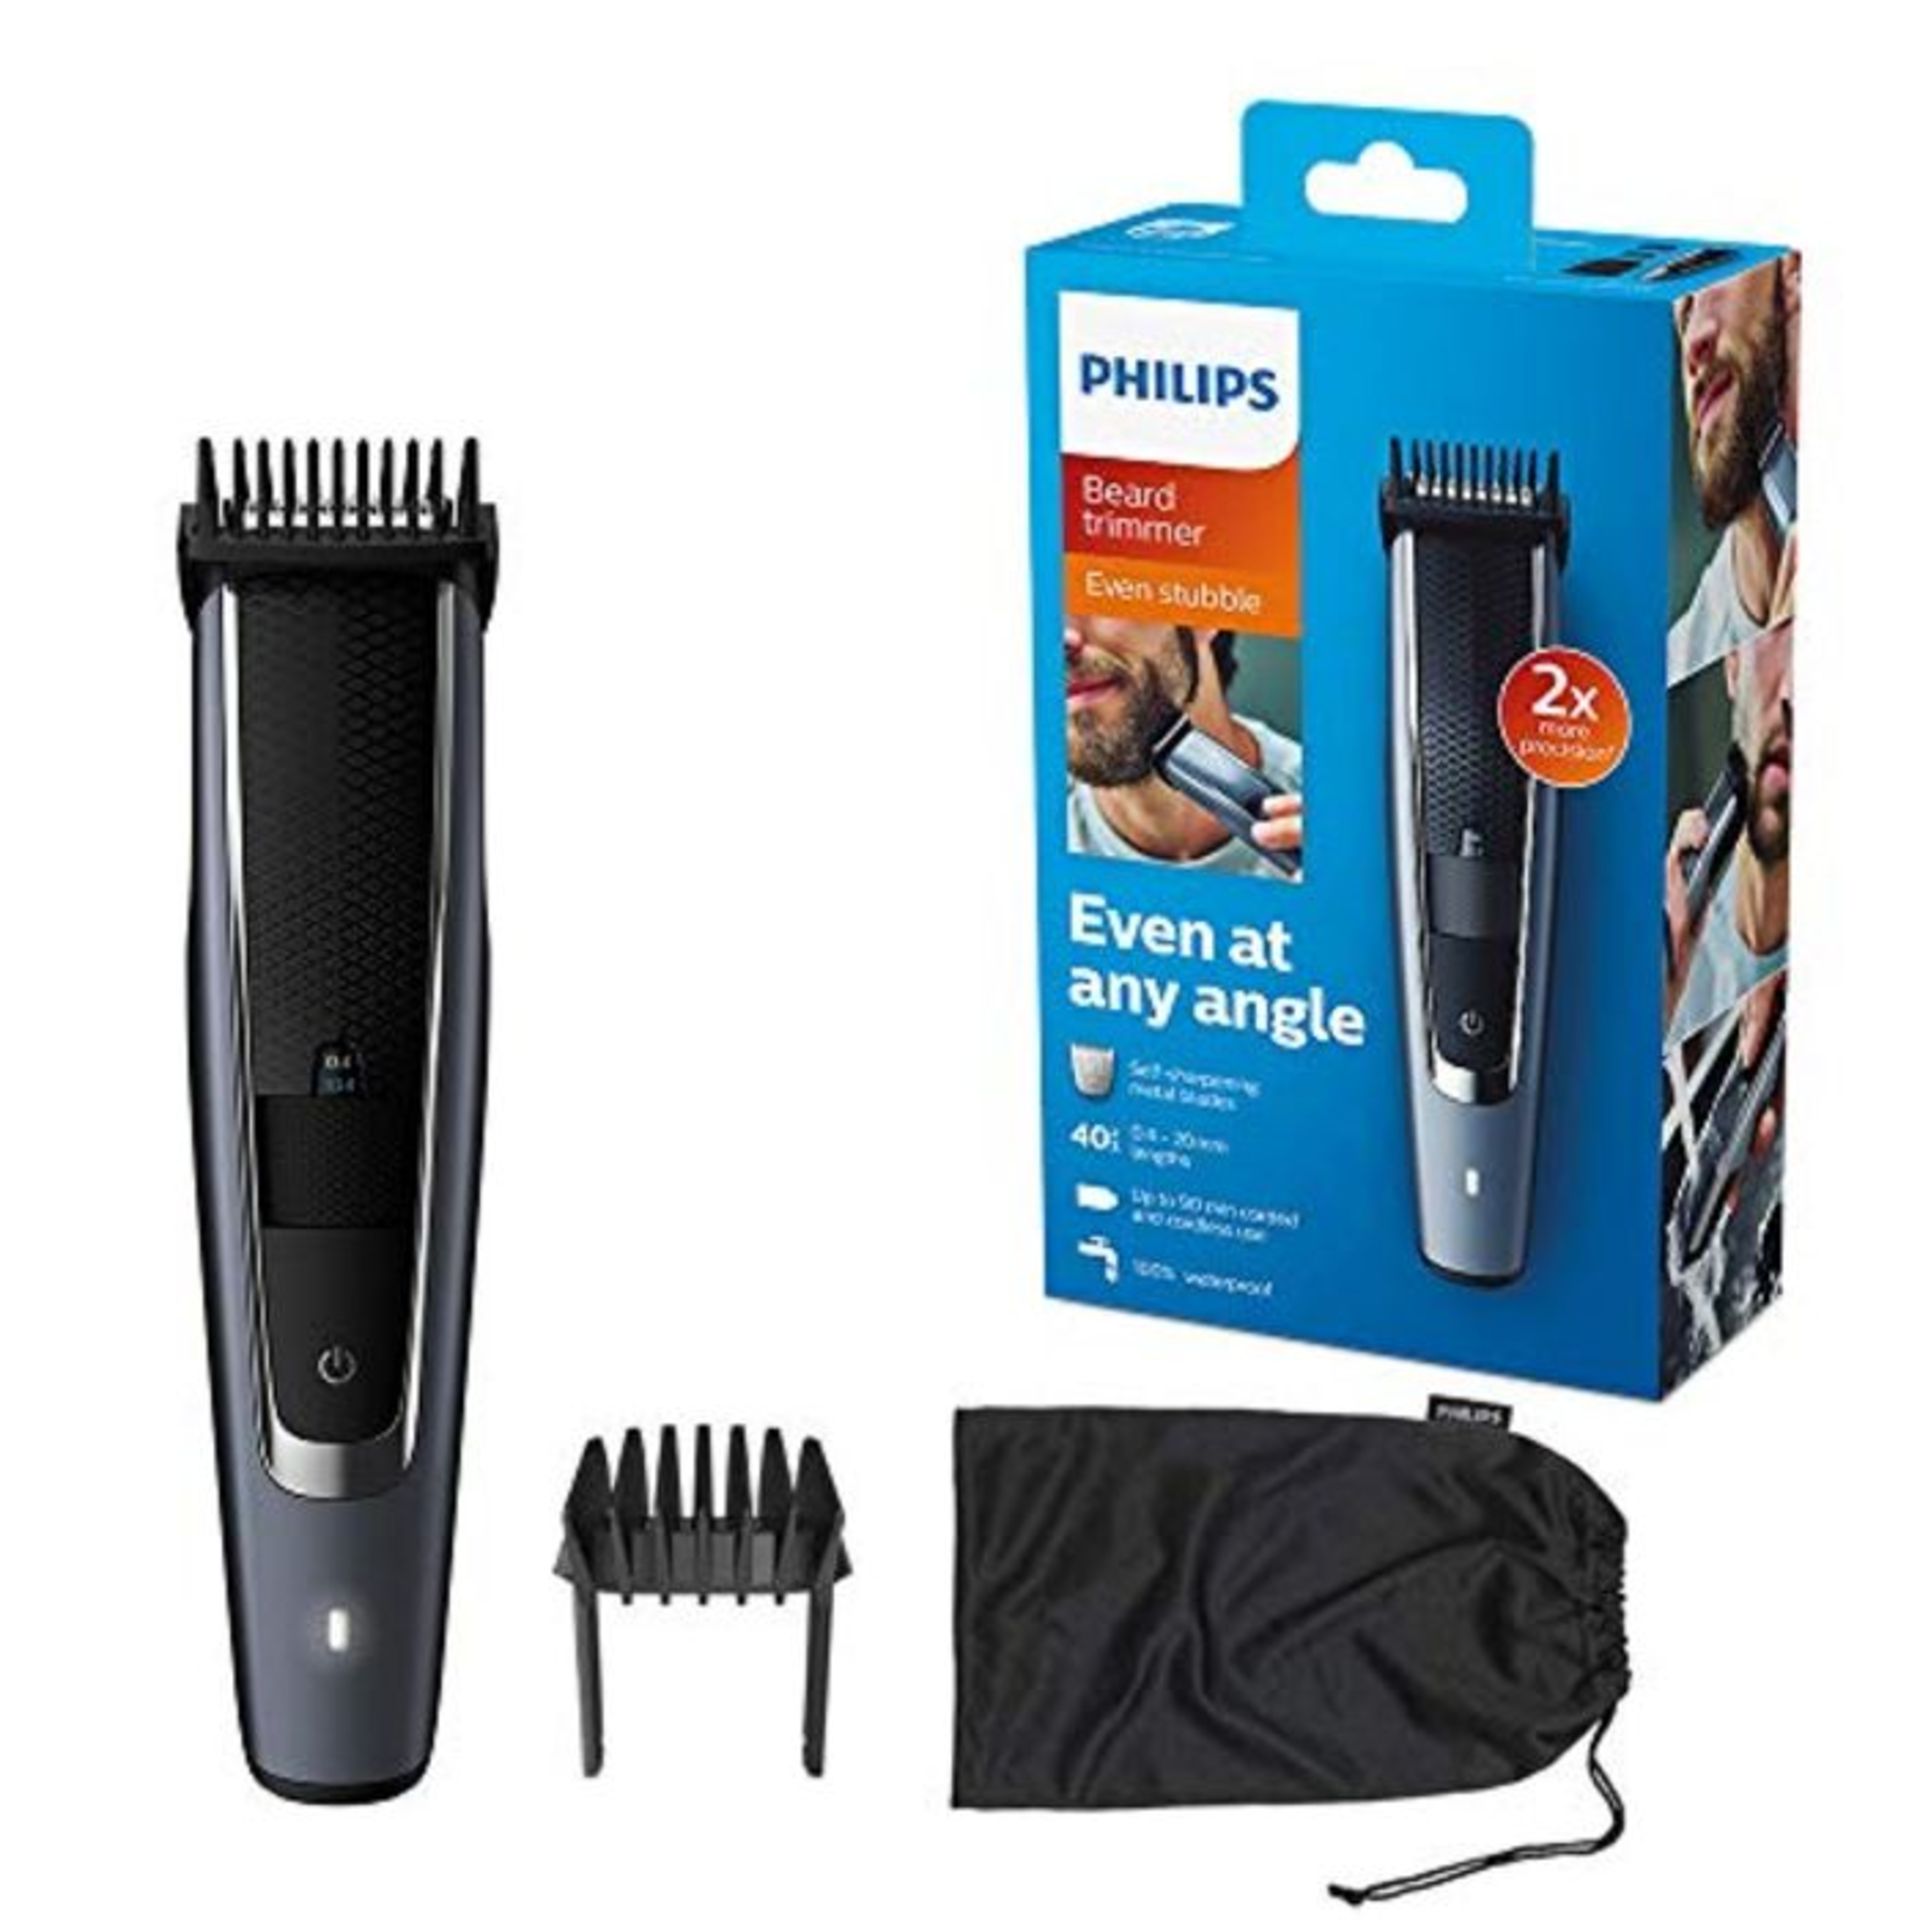 Philips Beard & Stubble Trimmer/Hair Clipper for Men, Series 5000, 40 Length Settings,